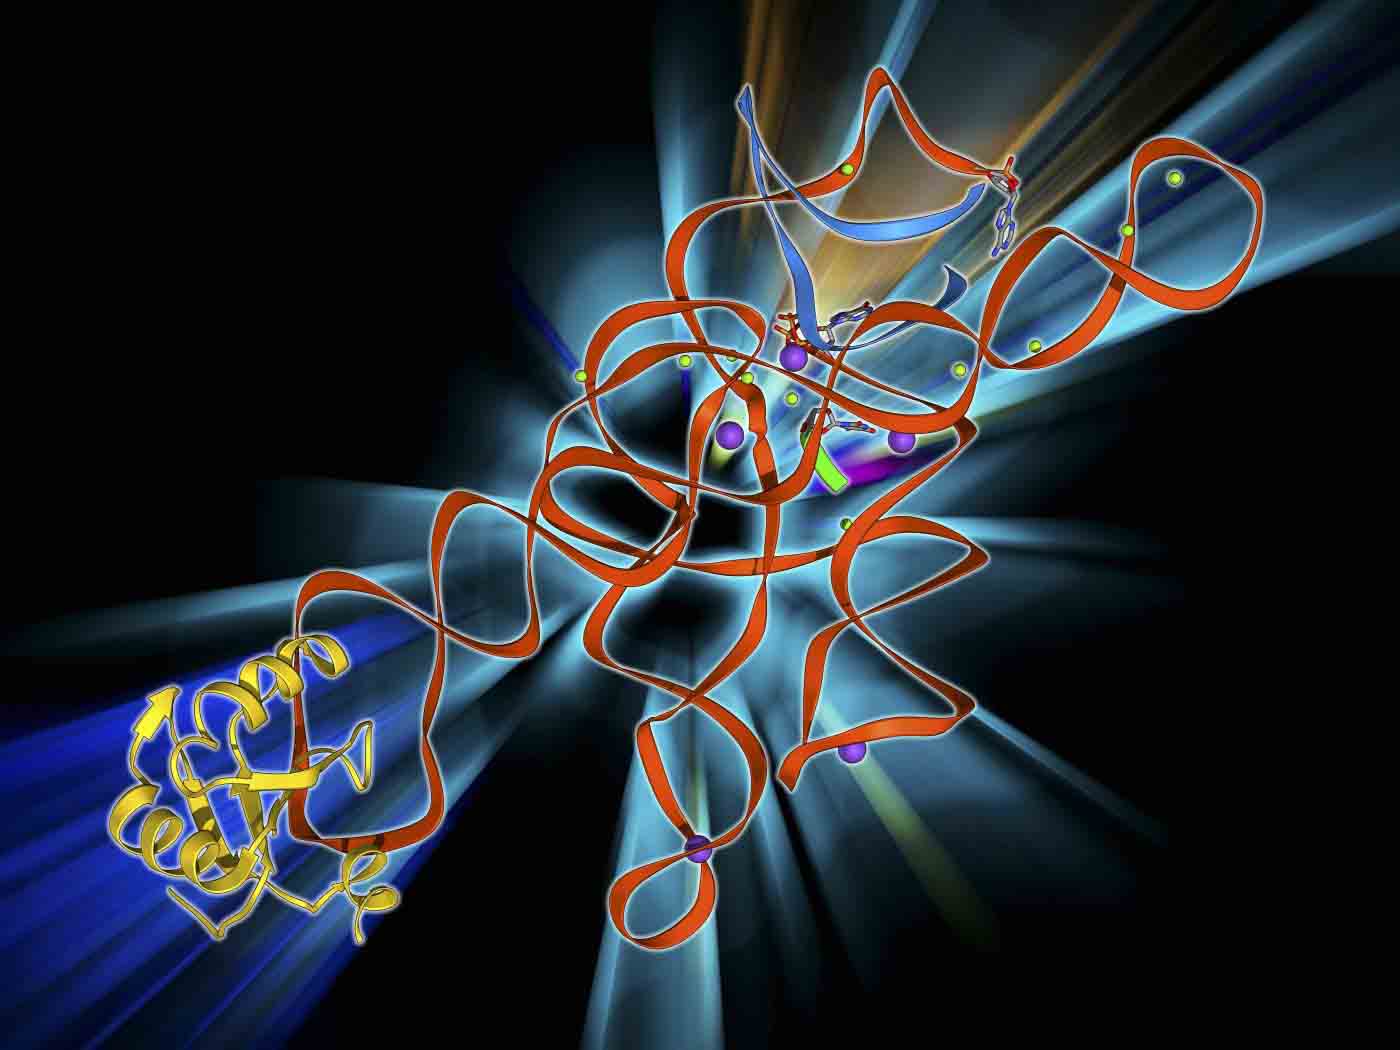 RNA Splicing